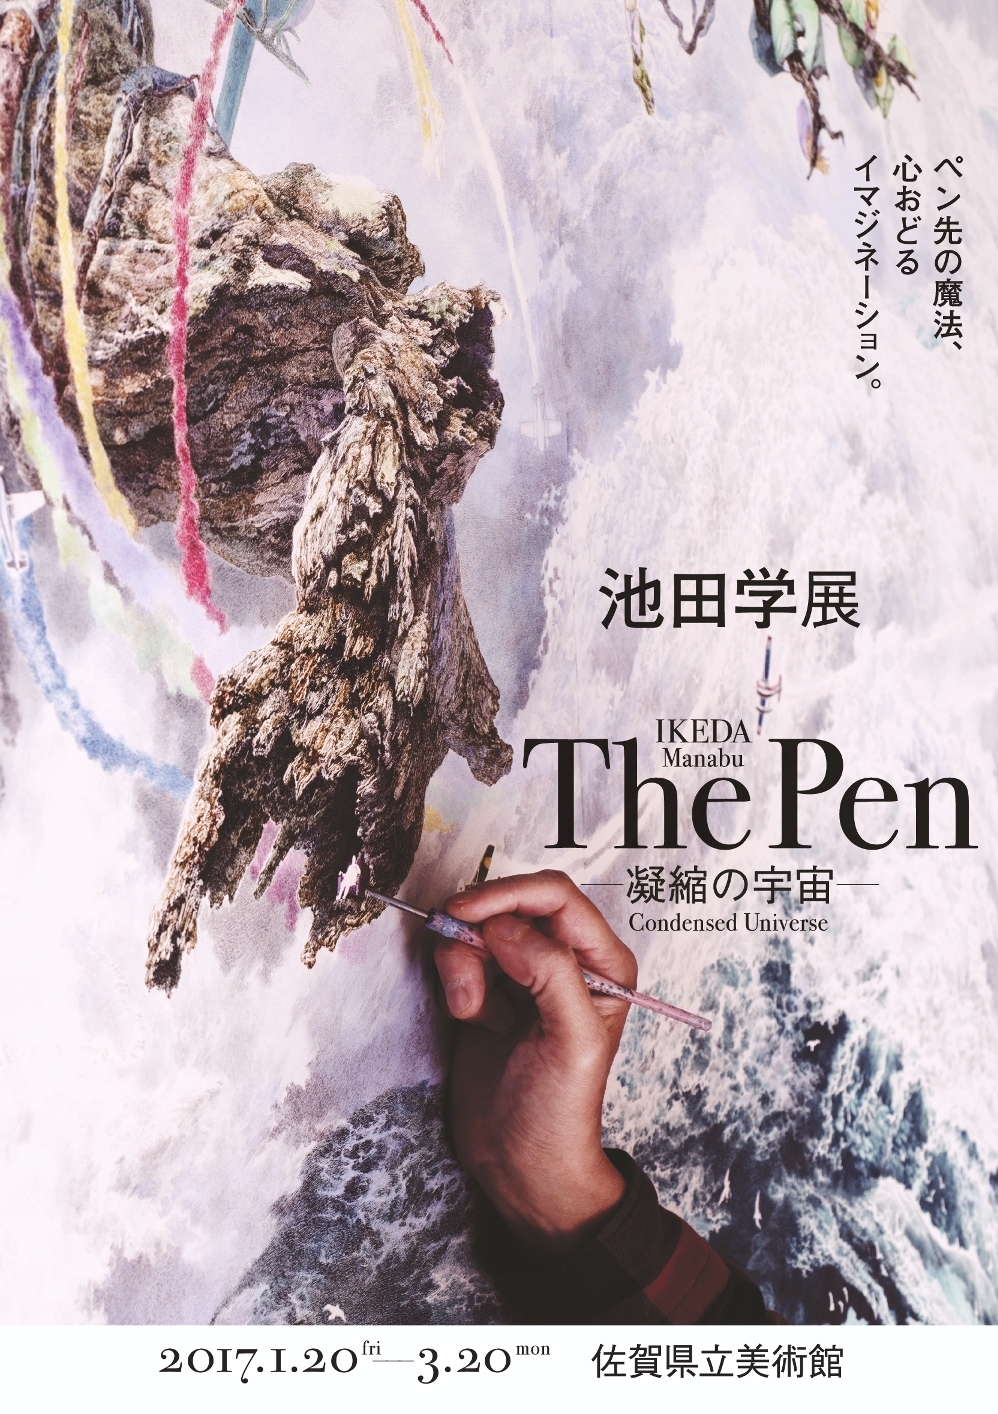 池田学展 The Pen －凝縮の宇宙－